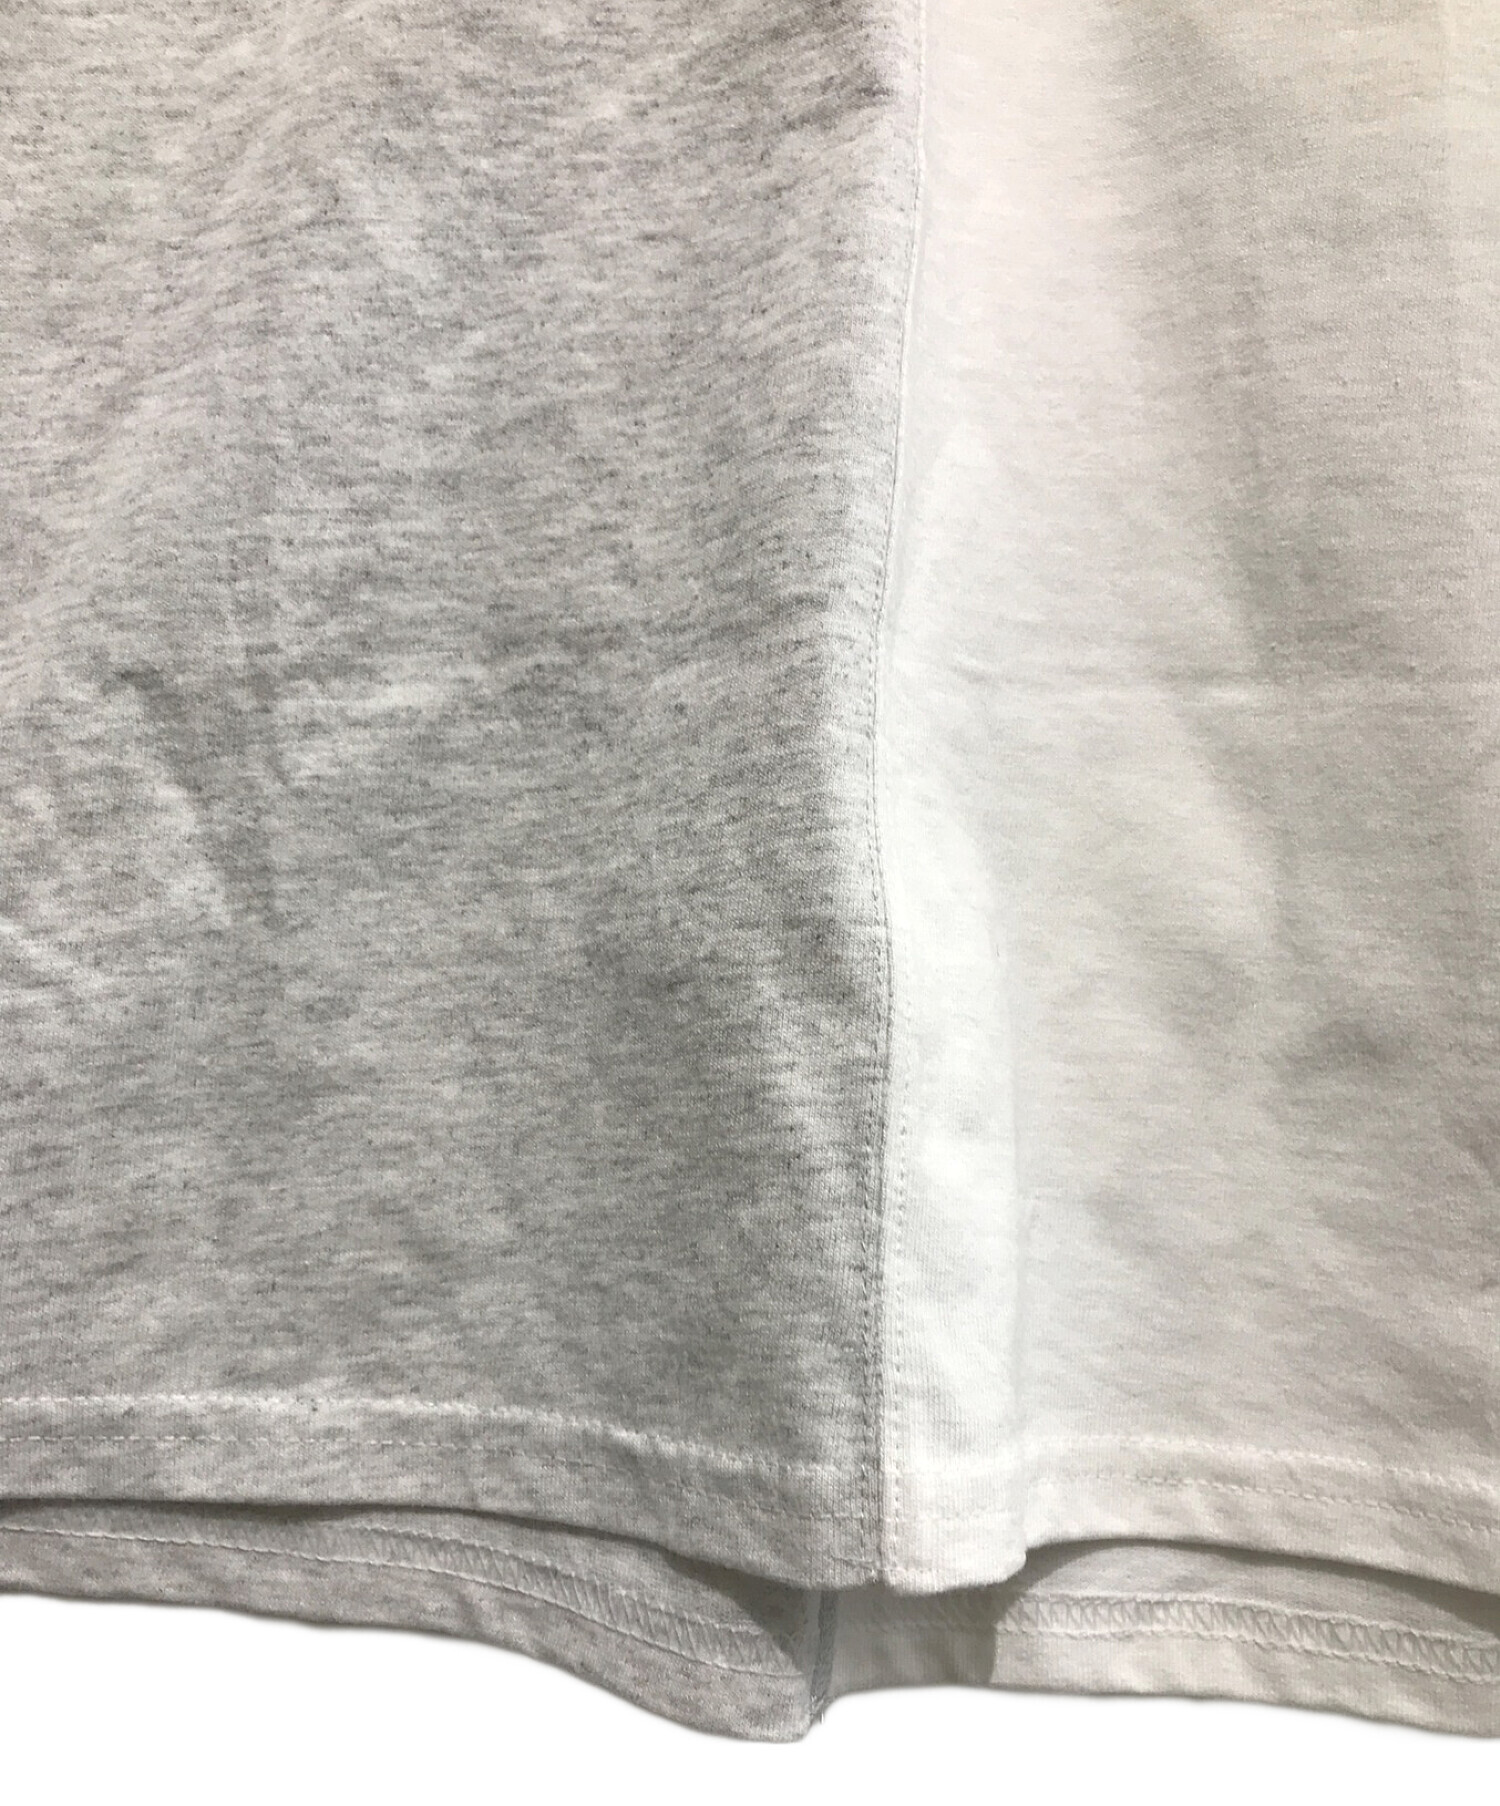 FACTOTUM (ファクトタム) ポケットプリントTシャツ ホワイト×グレー サイズ:48 未使用品